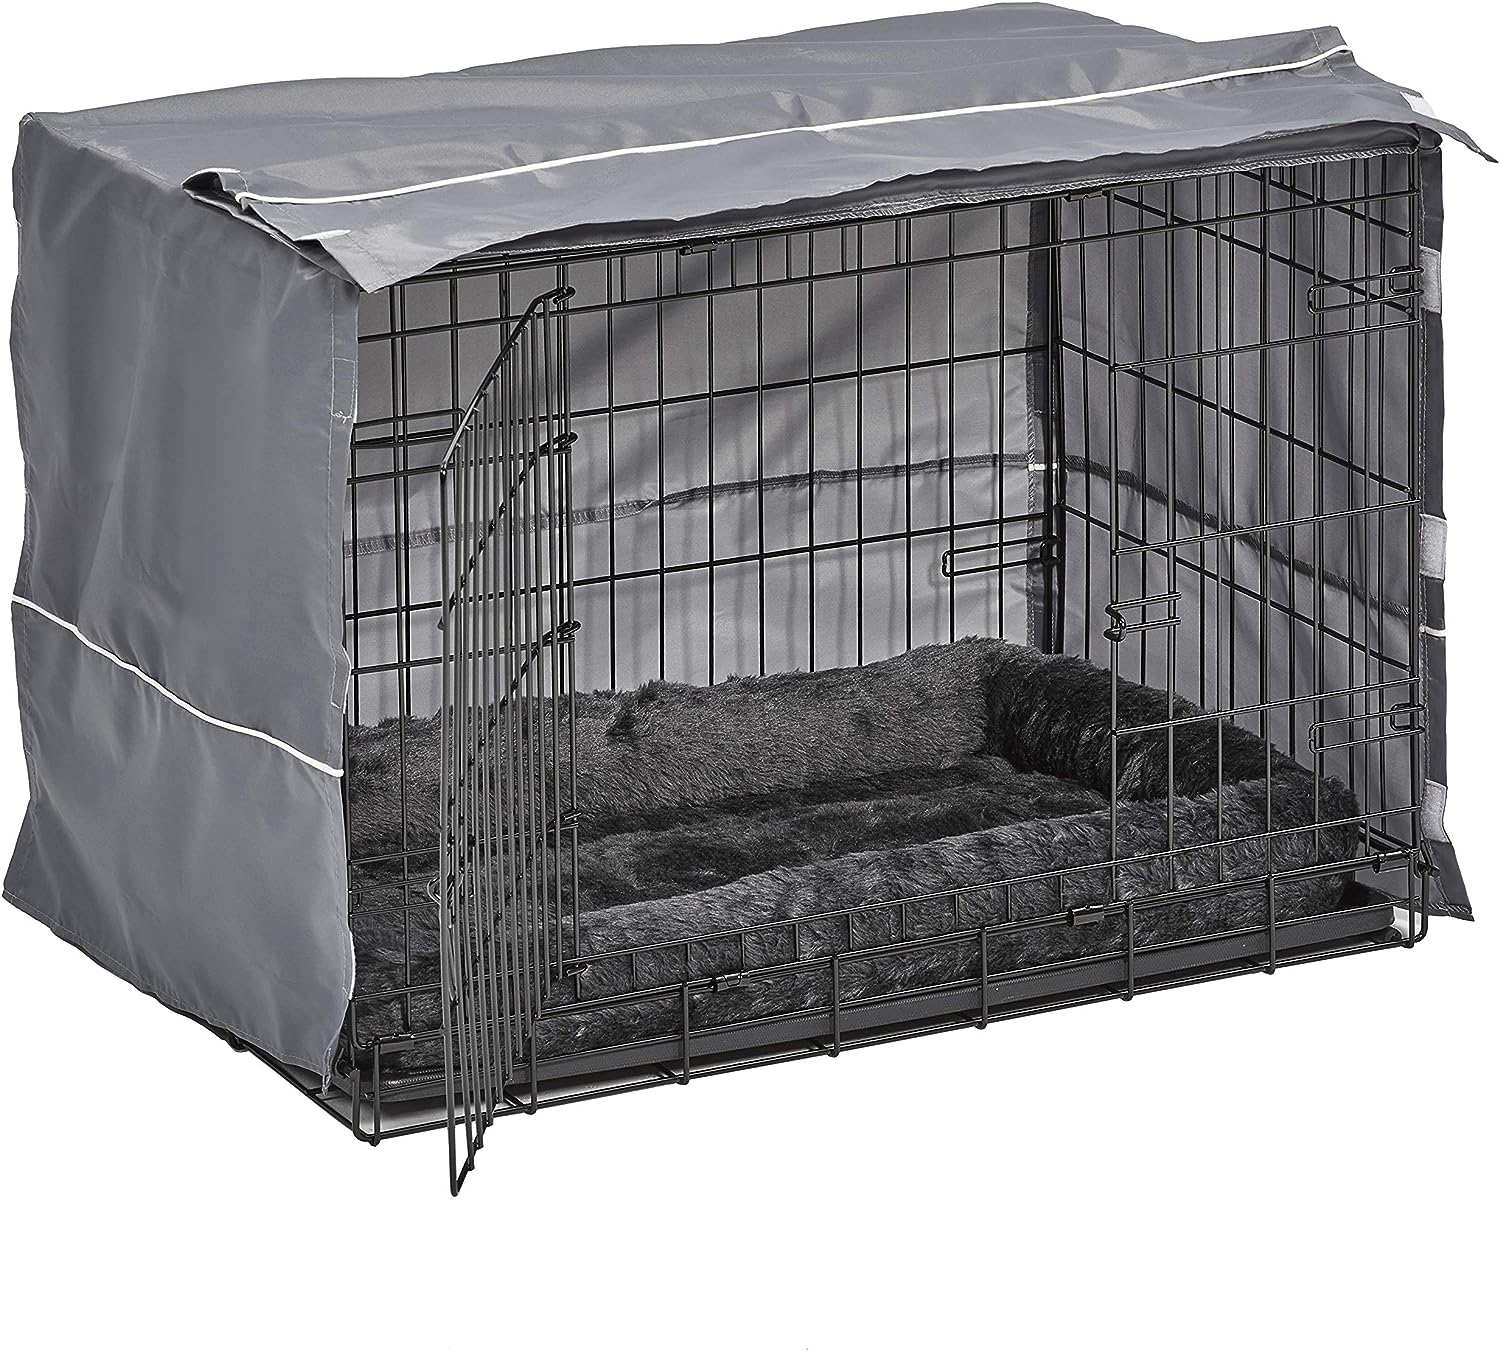 New World Kit de jaula para perros de doble puerta incluye una cama gris y